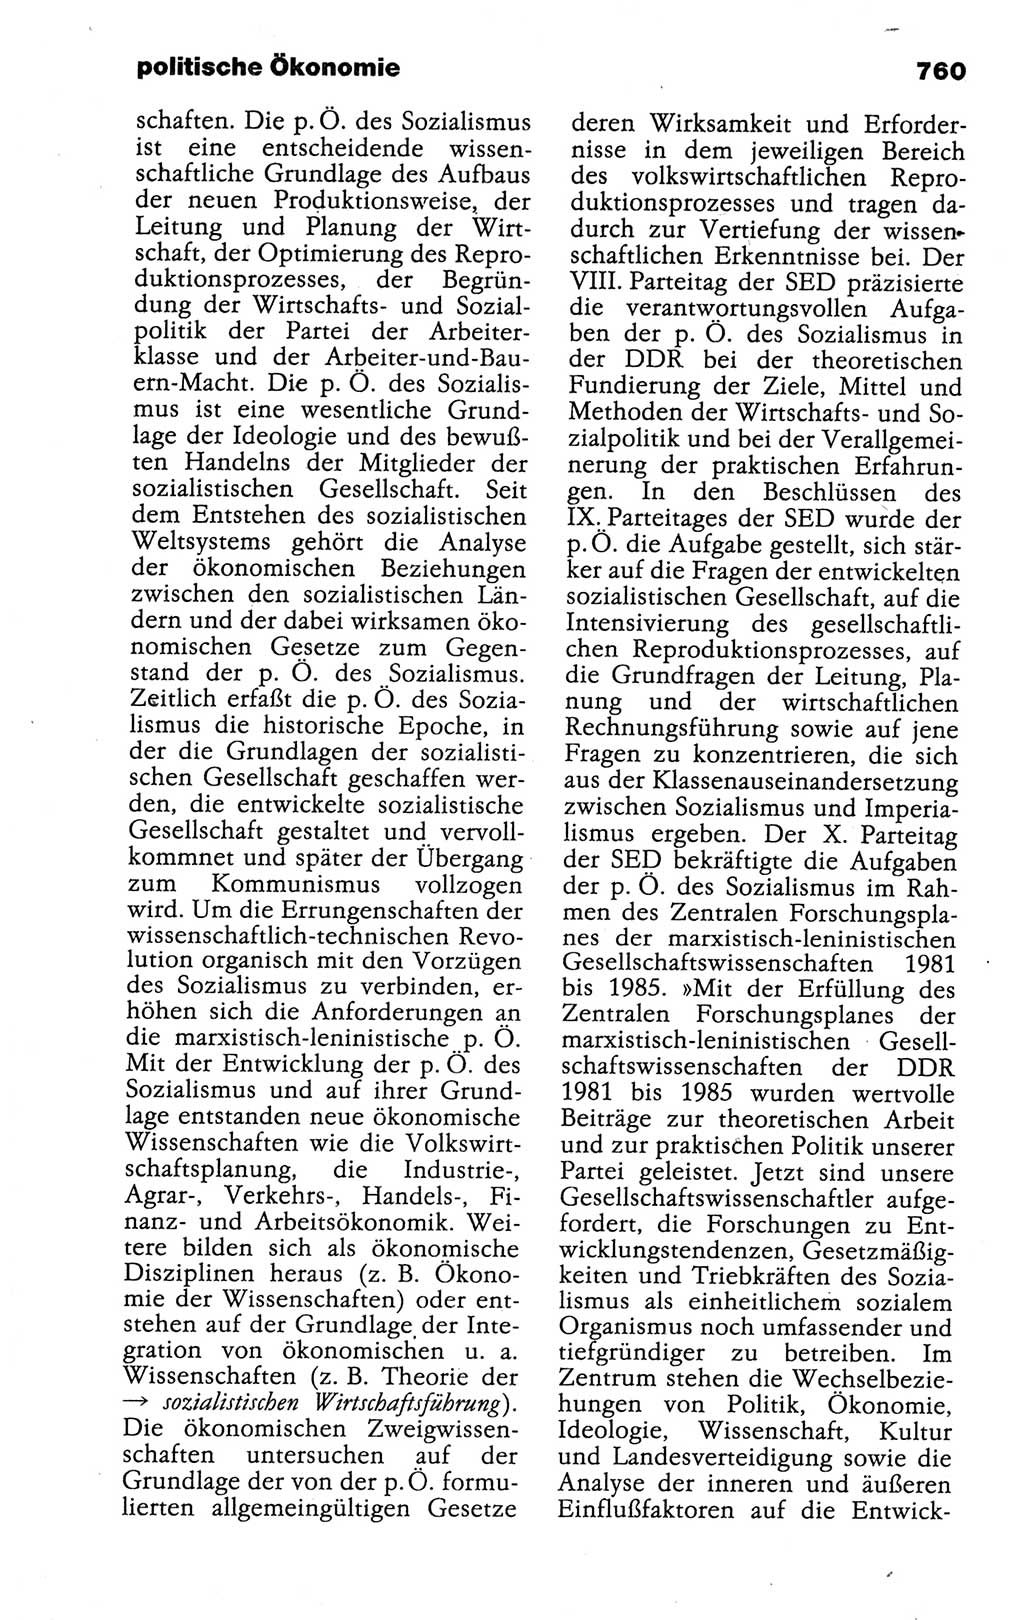 Kleines politisches Wörterbuch [Deutsche Demokratische Republik (DDR)] 1988, Seite 760 (Kl. pol. Wb. DDR 1988, S. 760)